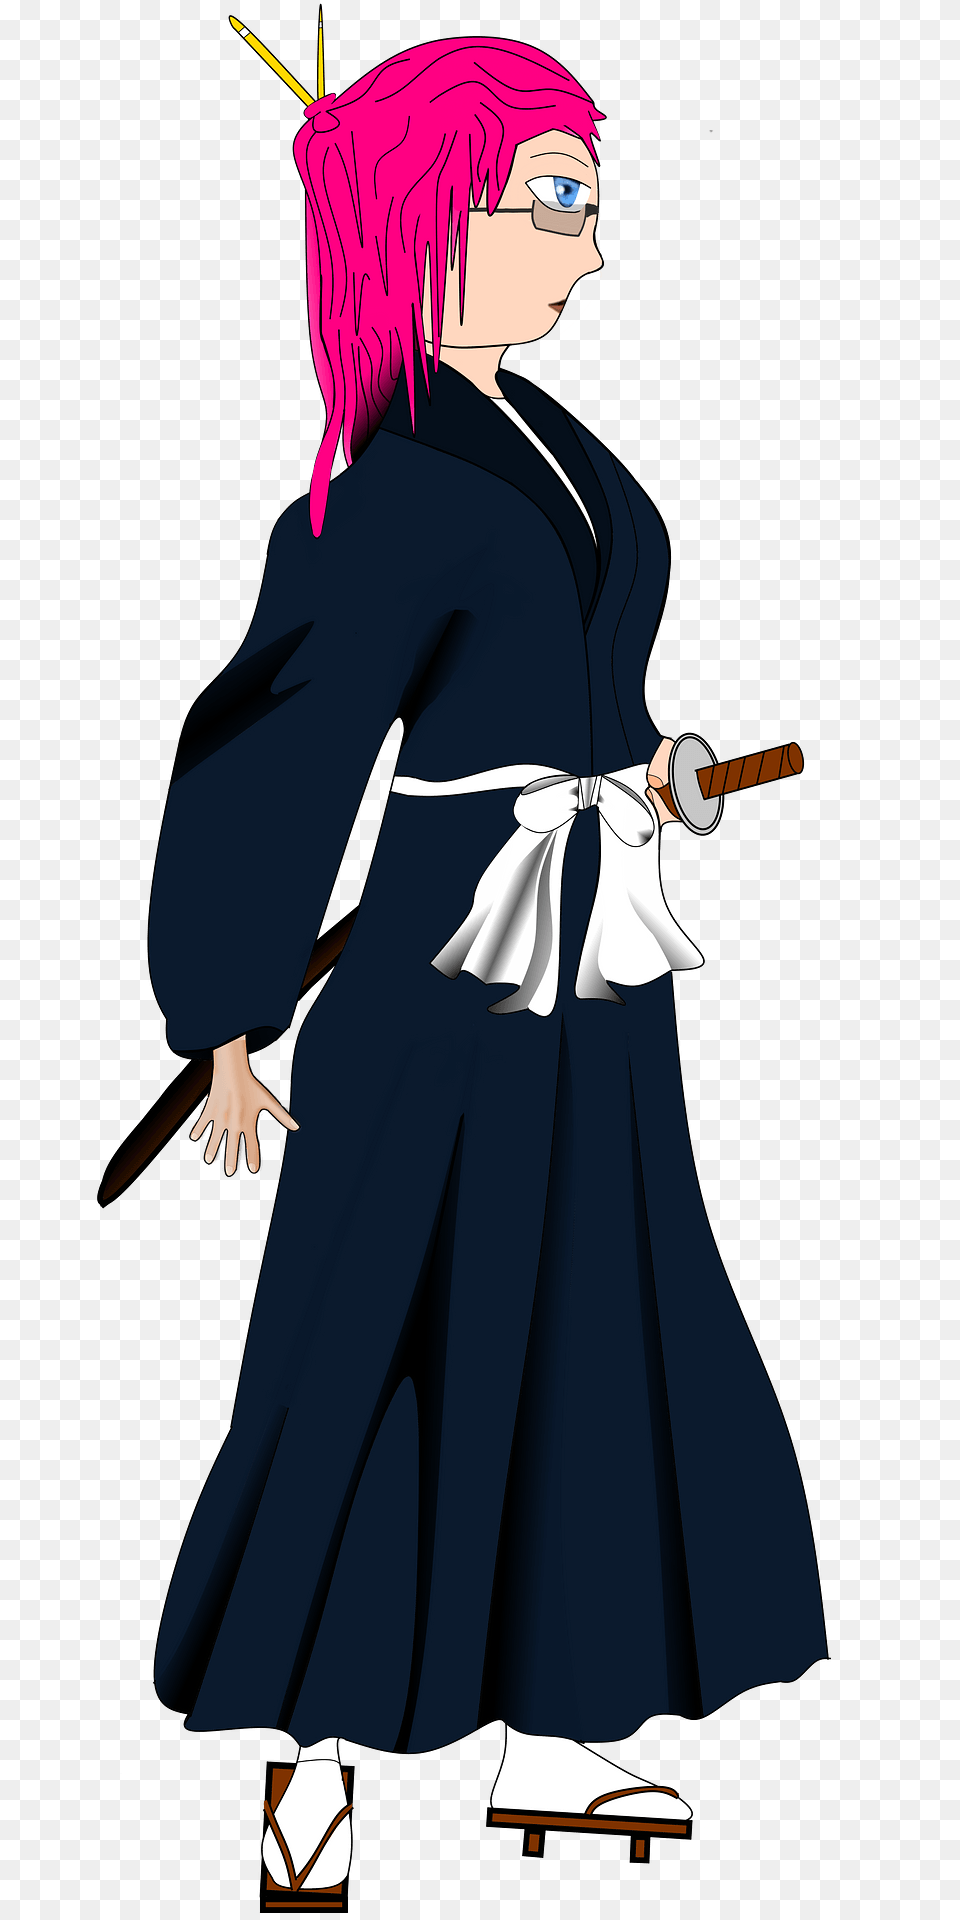 Samurai Woman Clipart, Adult, Publication, Person, Female Free Transparent Png